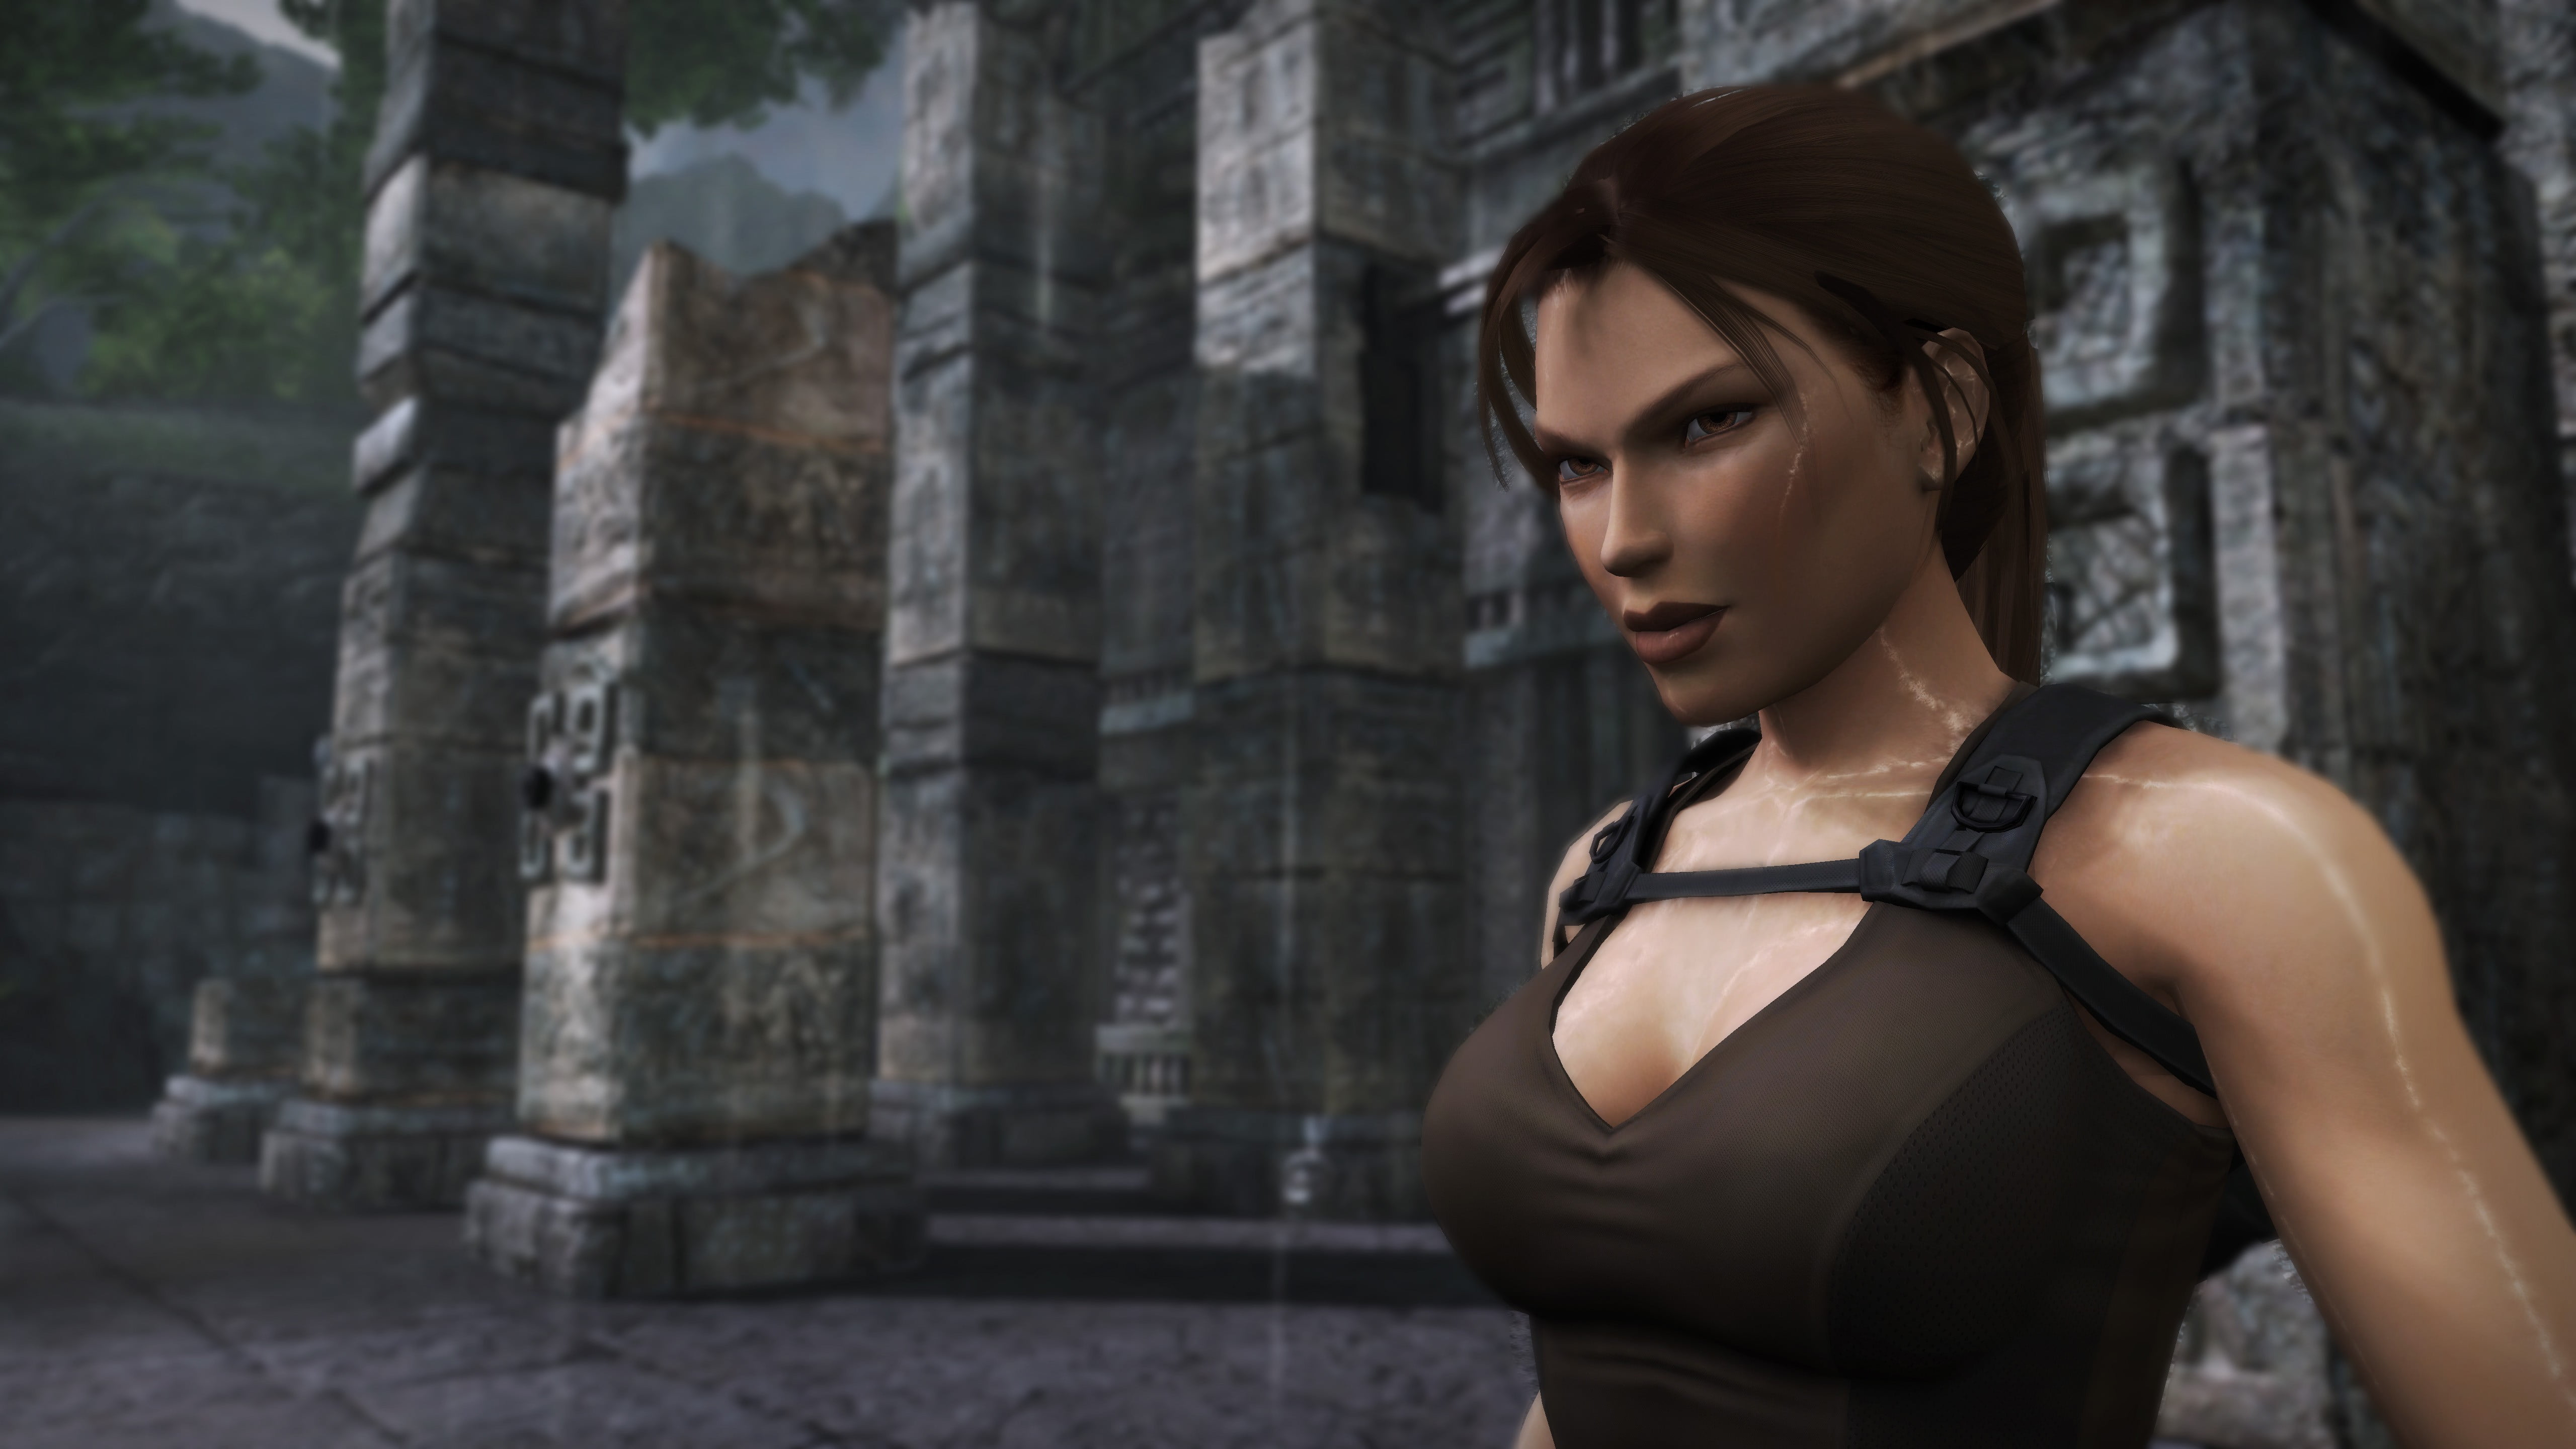 Игры похожие на girls. Томб Райдер Underworld. Lara Croft Tomb Raider. Tomb Raider 2008.